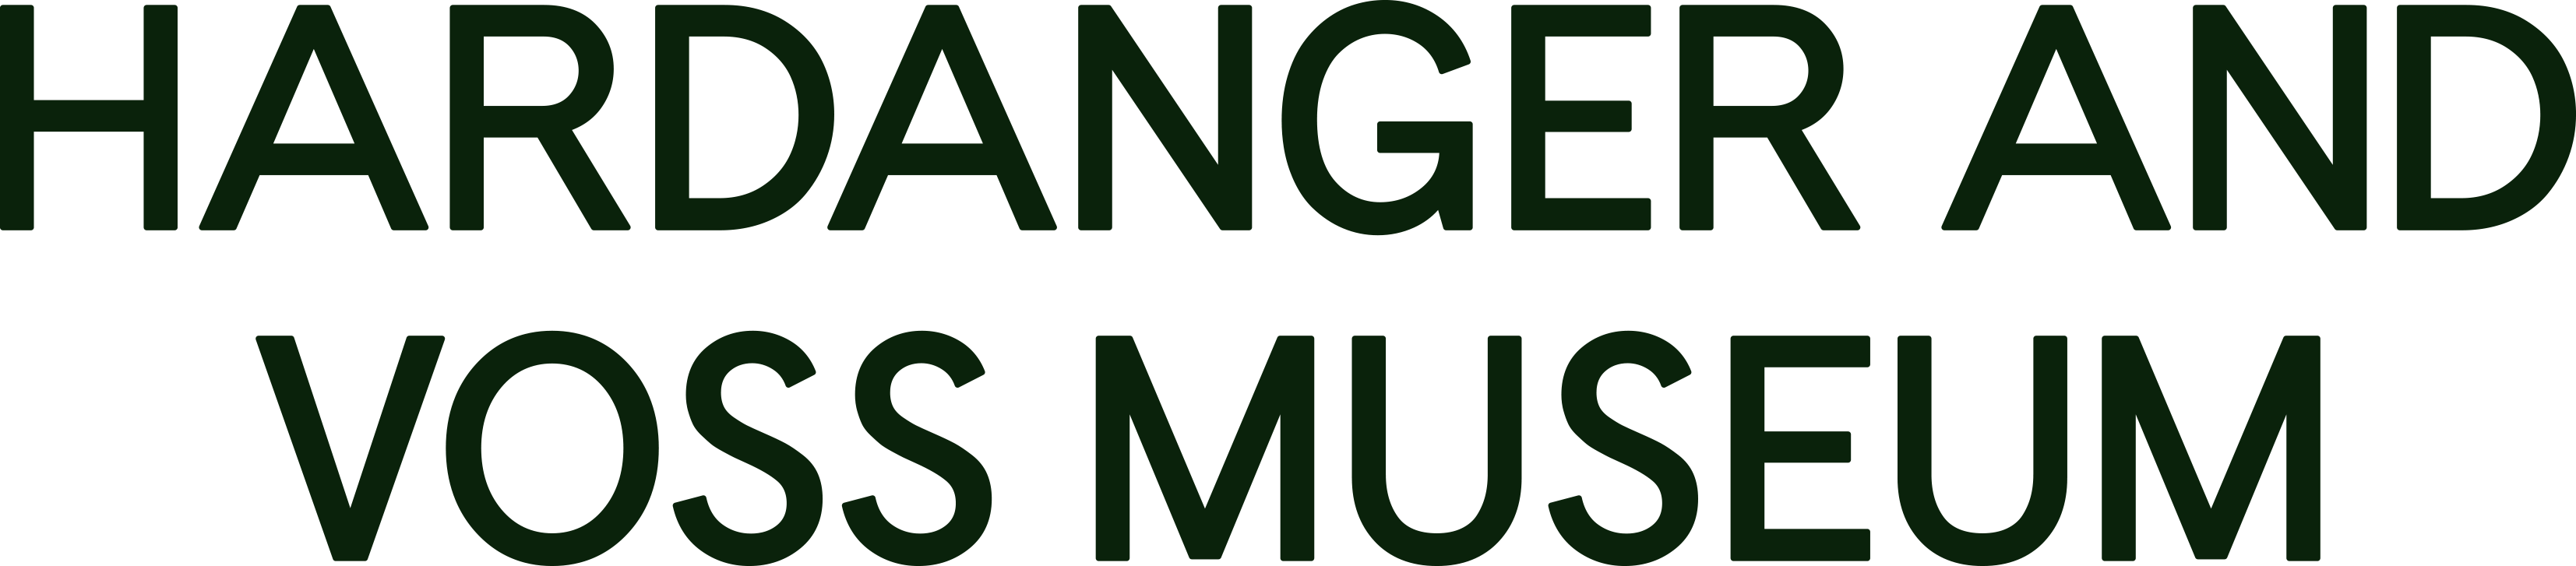 Hardanger og Voss museum